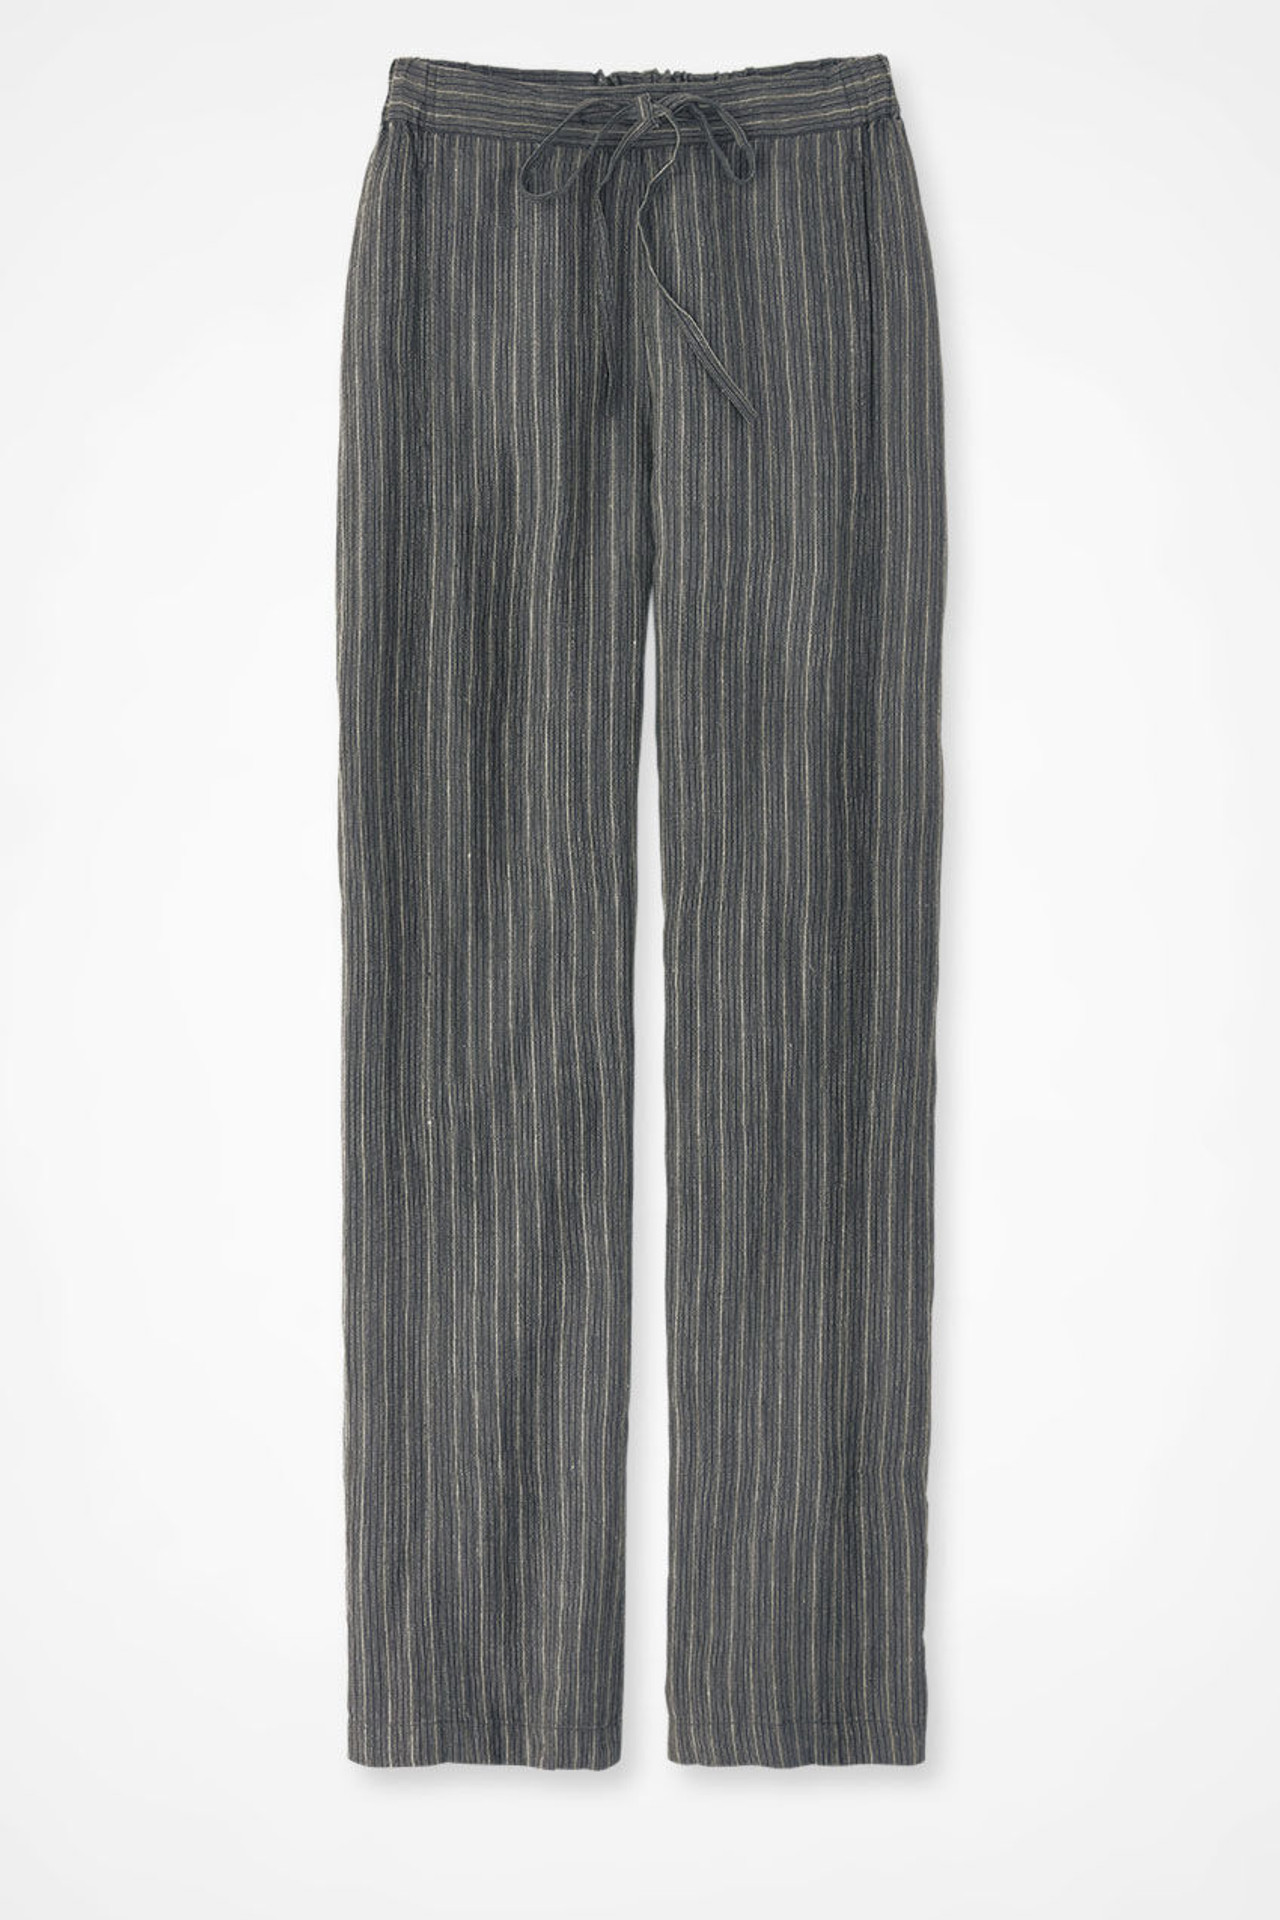 Spontaneous Stripes Linen Ankle Pants